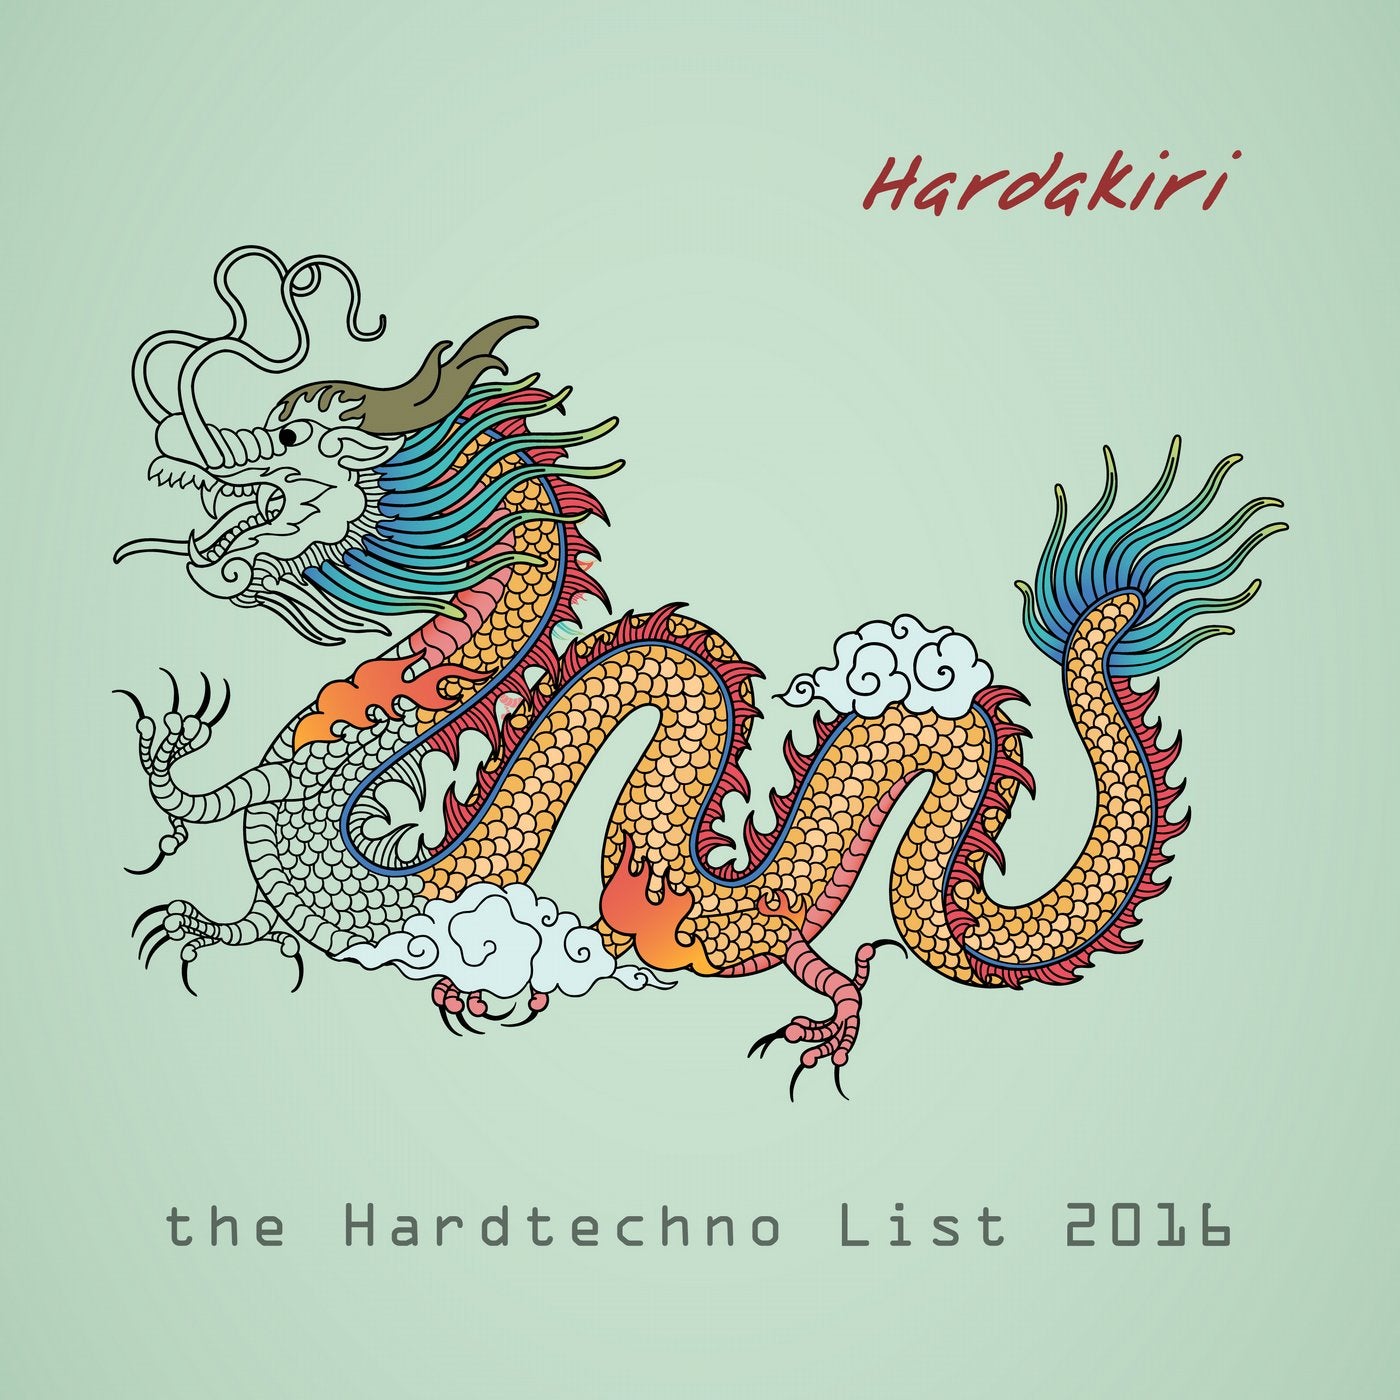 Hardakiri: the Hardtechno List 2016